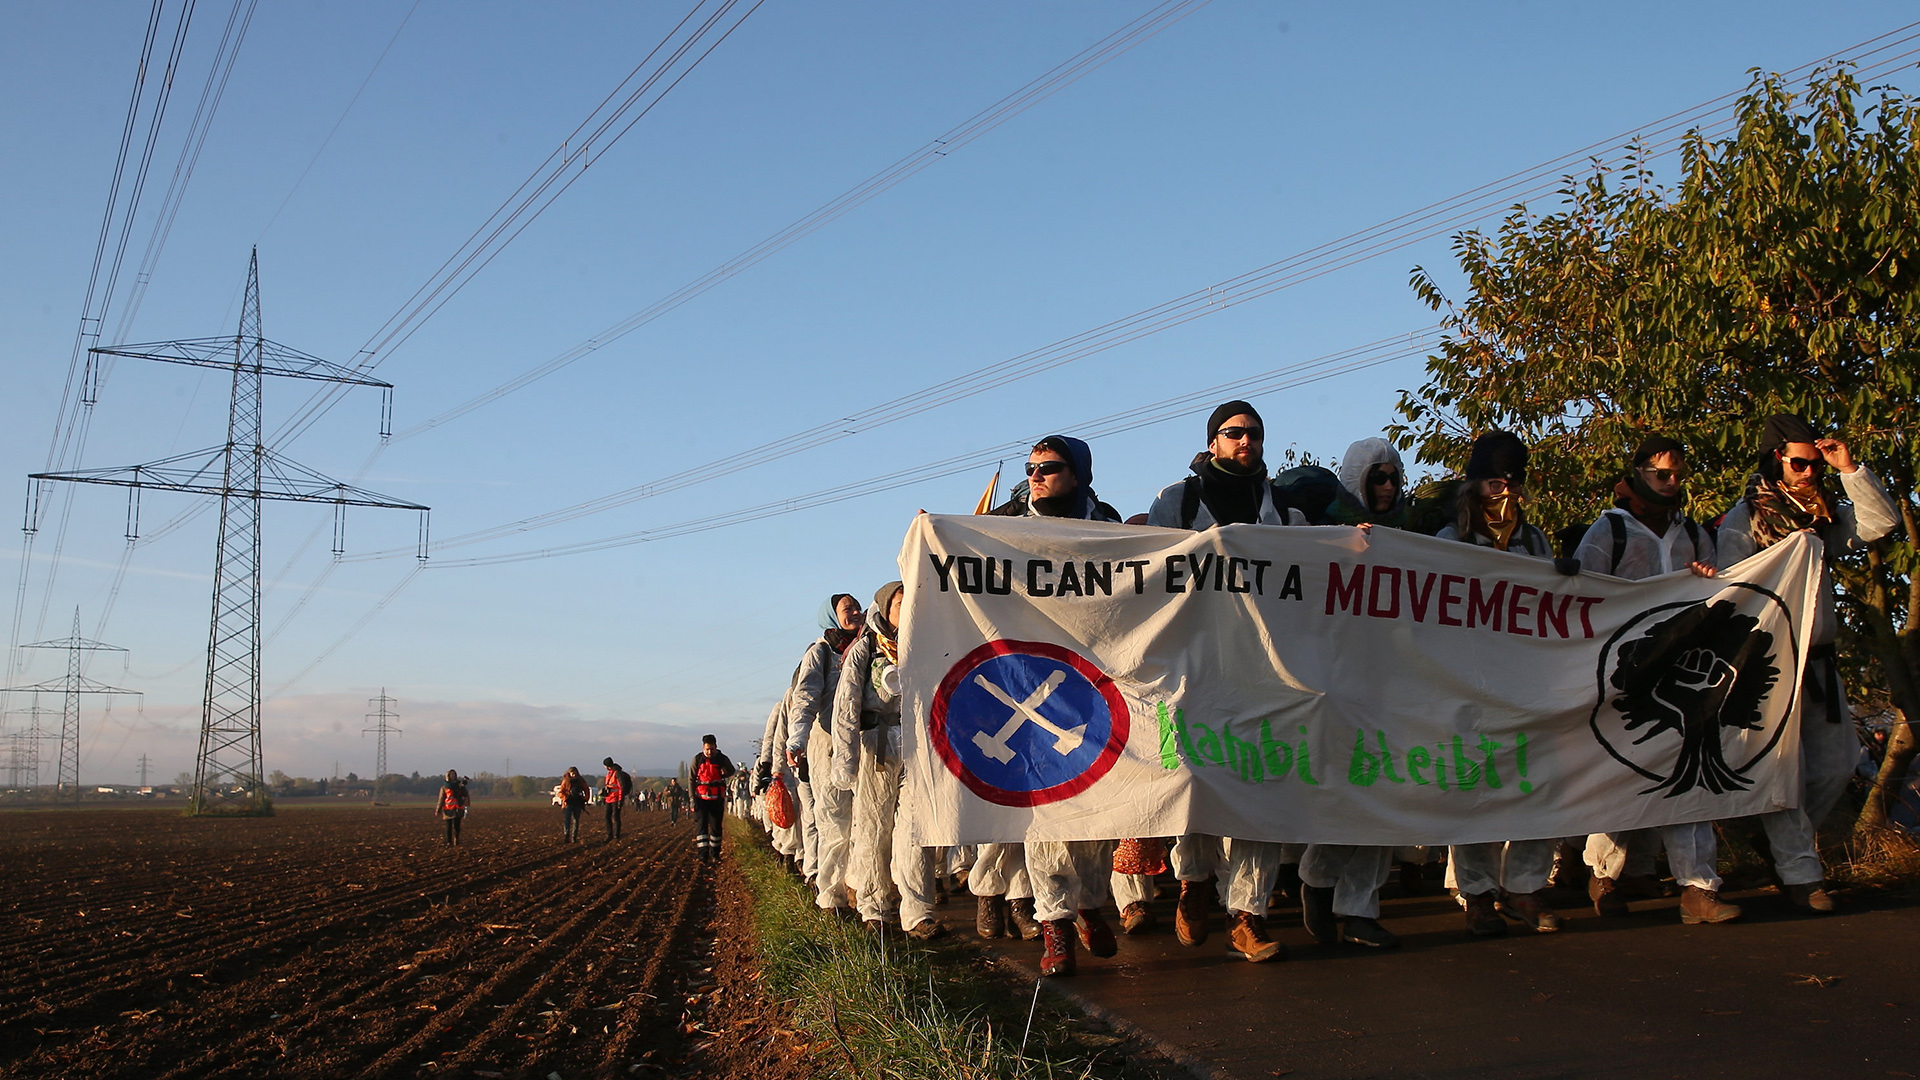 Umweltaktivistenlaufen in Richtung des Tagebaus Hambach | Bildquelle: dpa